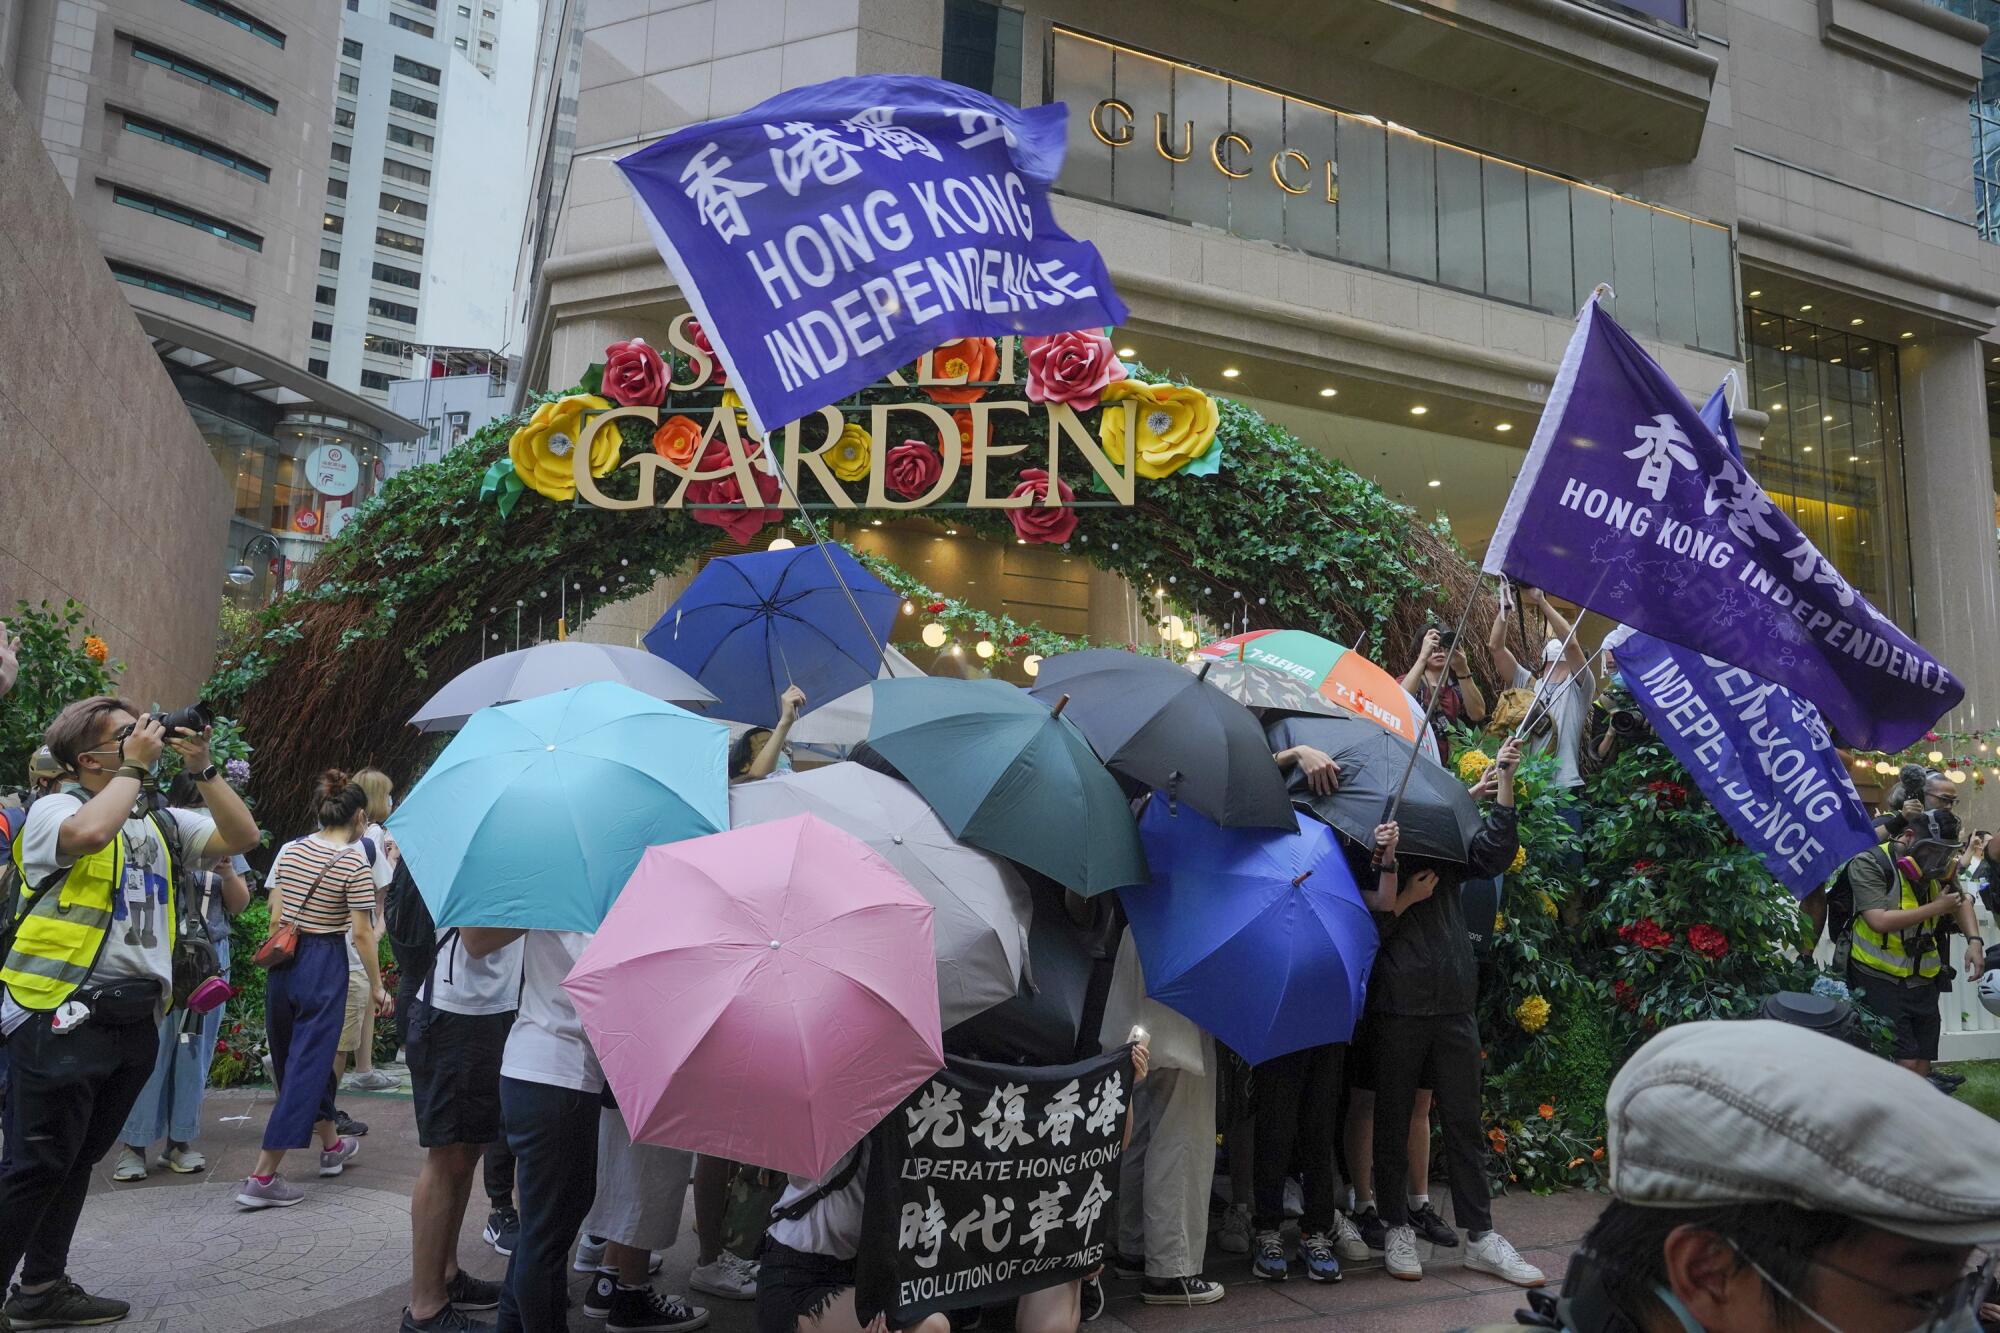 Protesters in Hong Kong set up a defense shield using umbrellas.